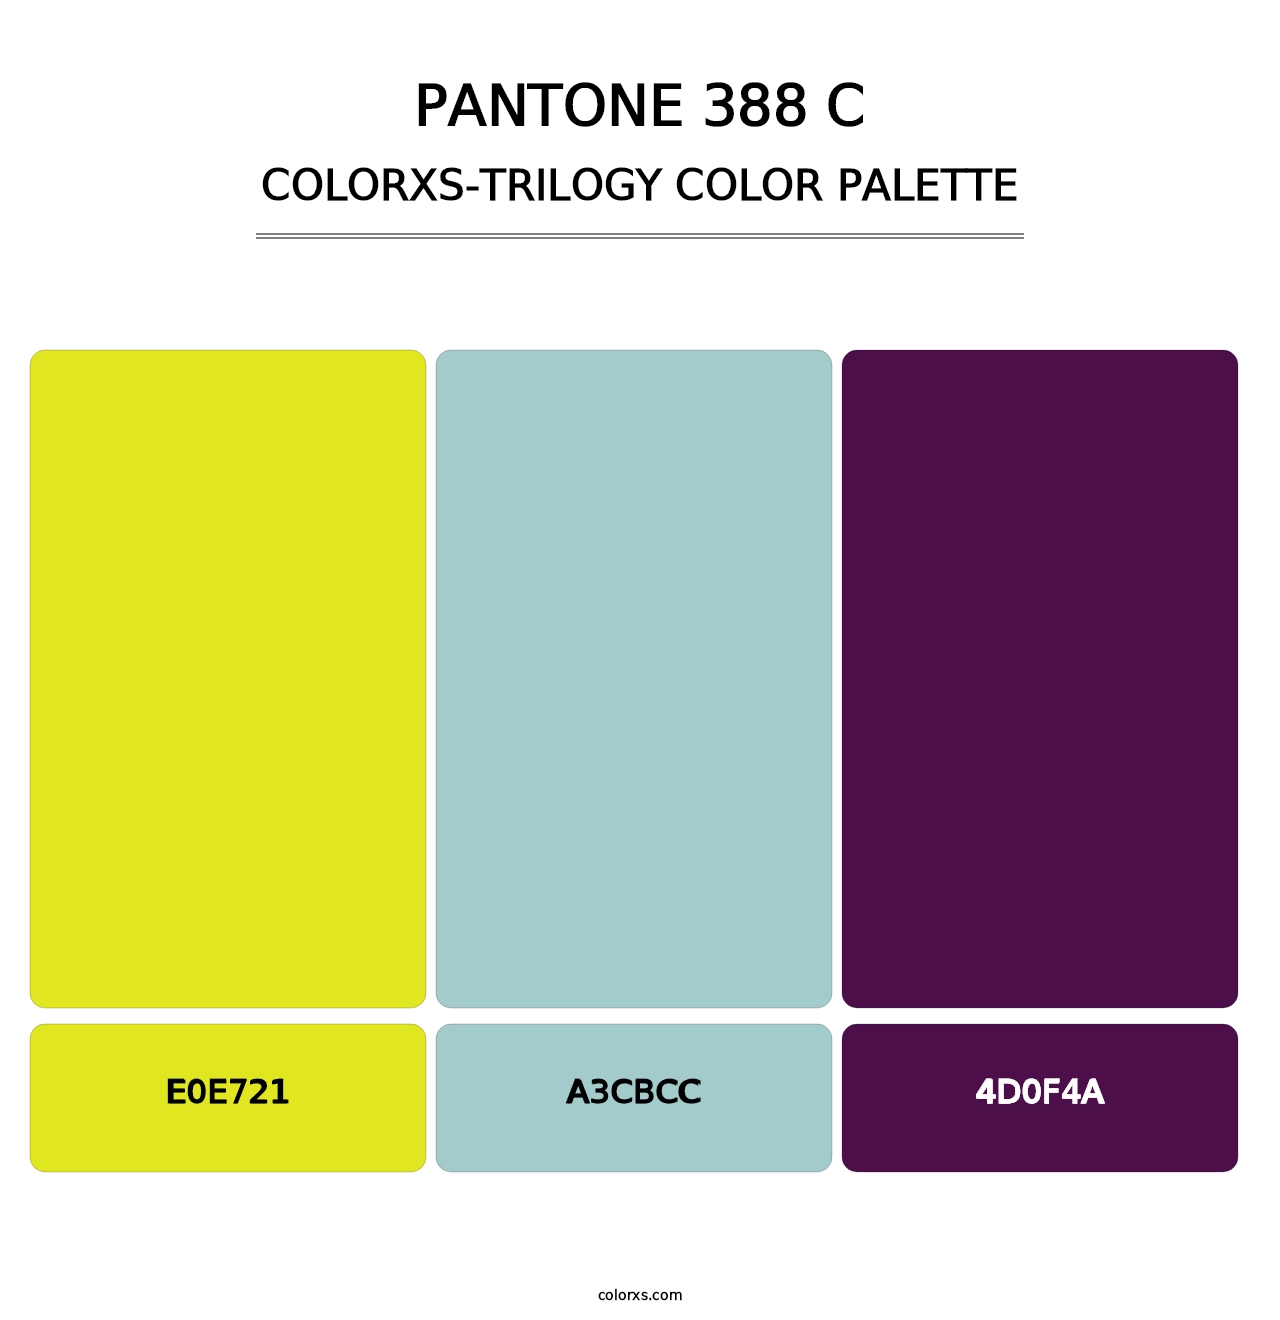 PANTONE 388 C - Colorxs Trilogy Palette